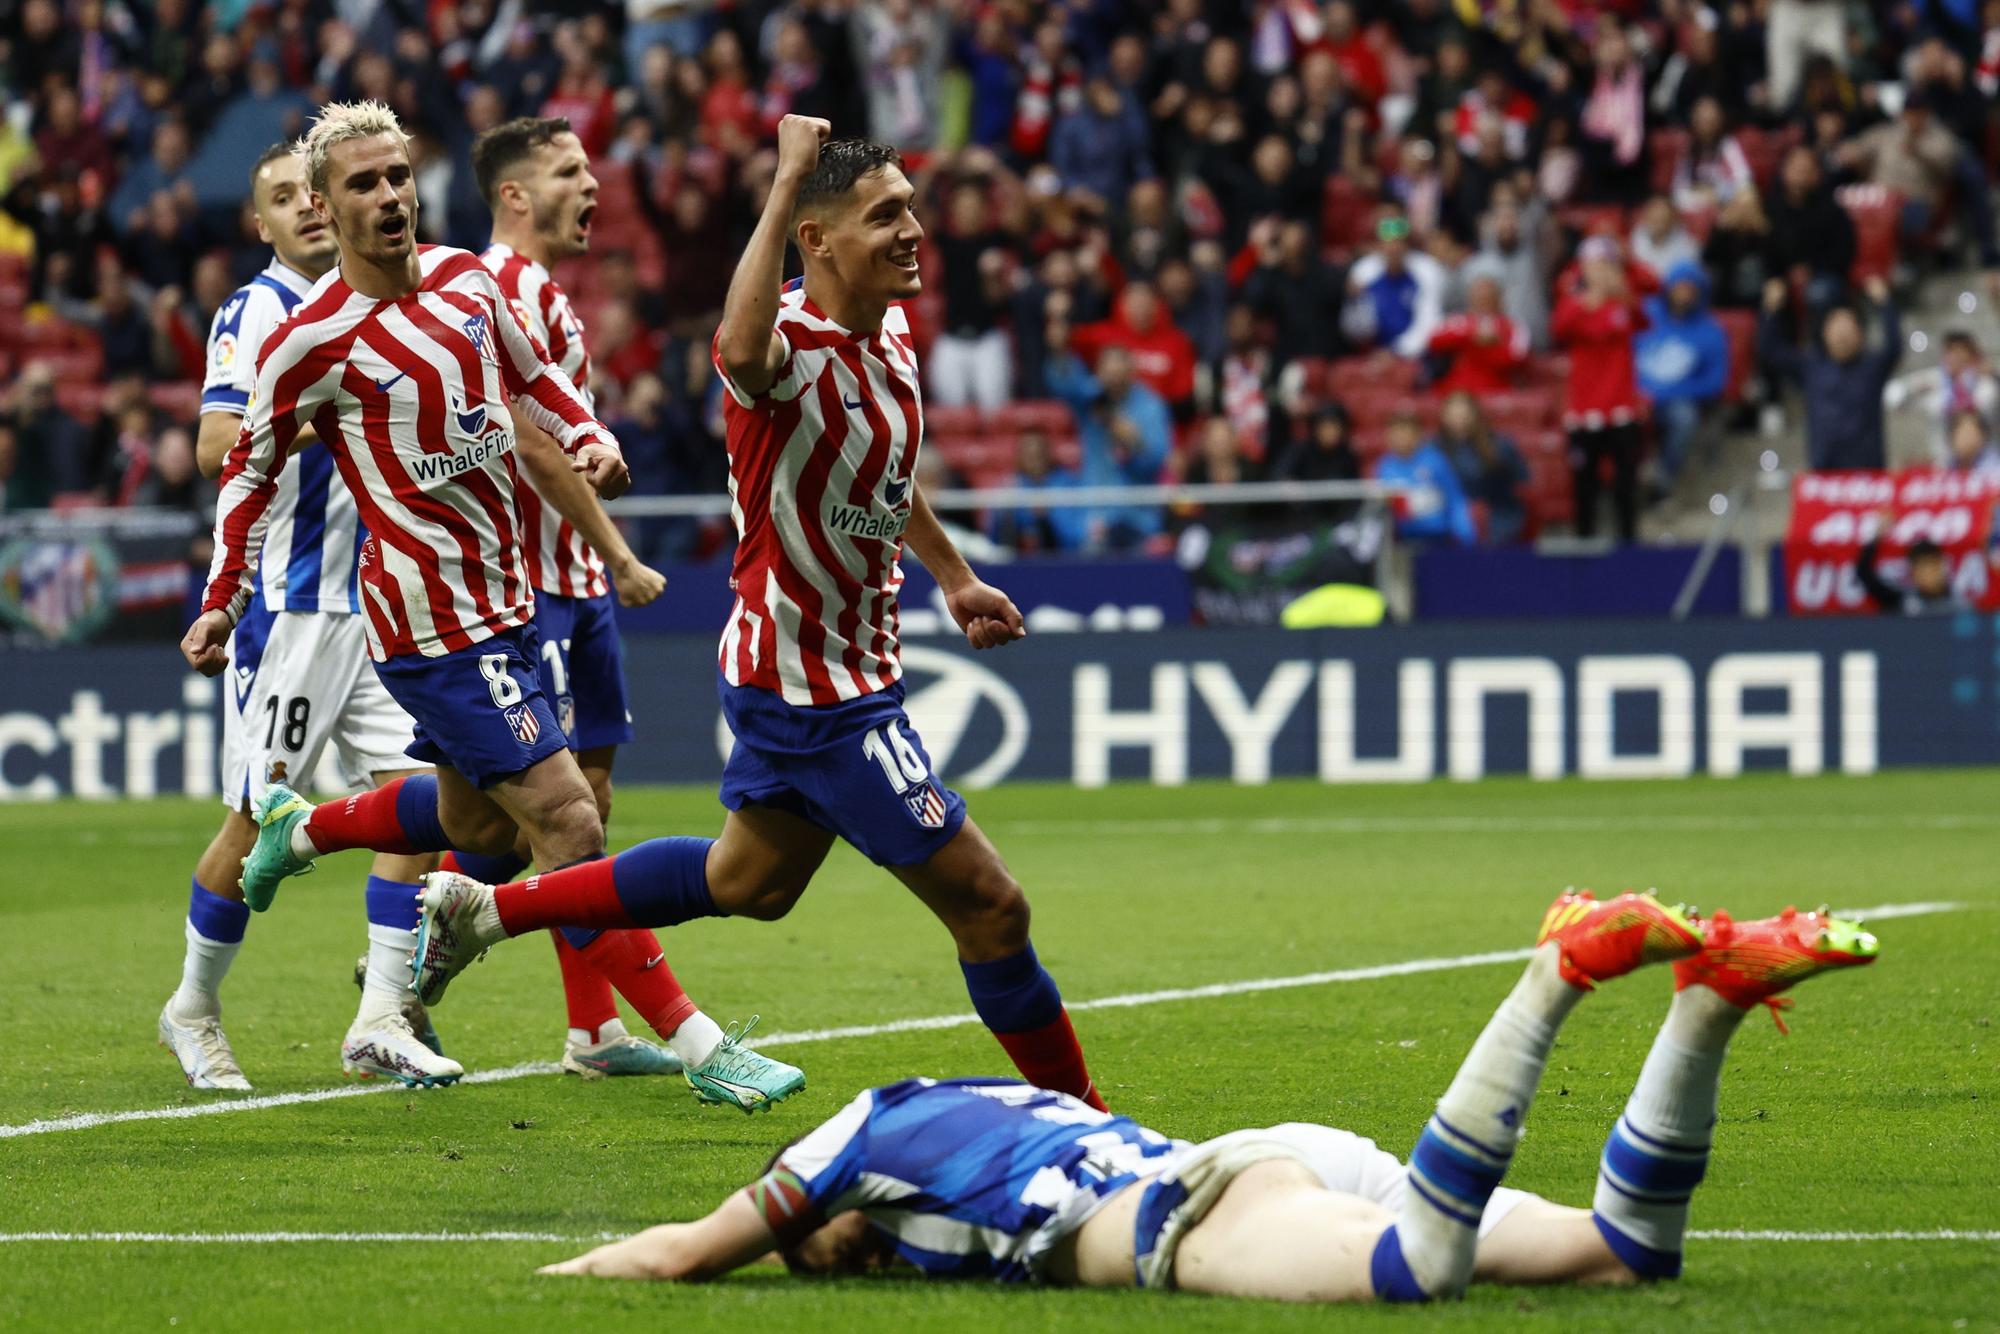 El Atlético regresará a la Supercopa de España una temporada después